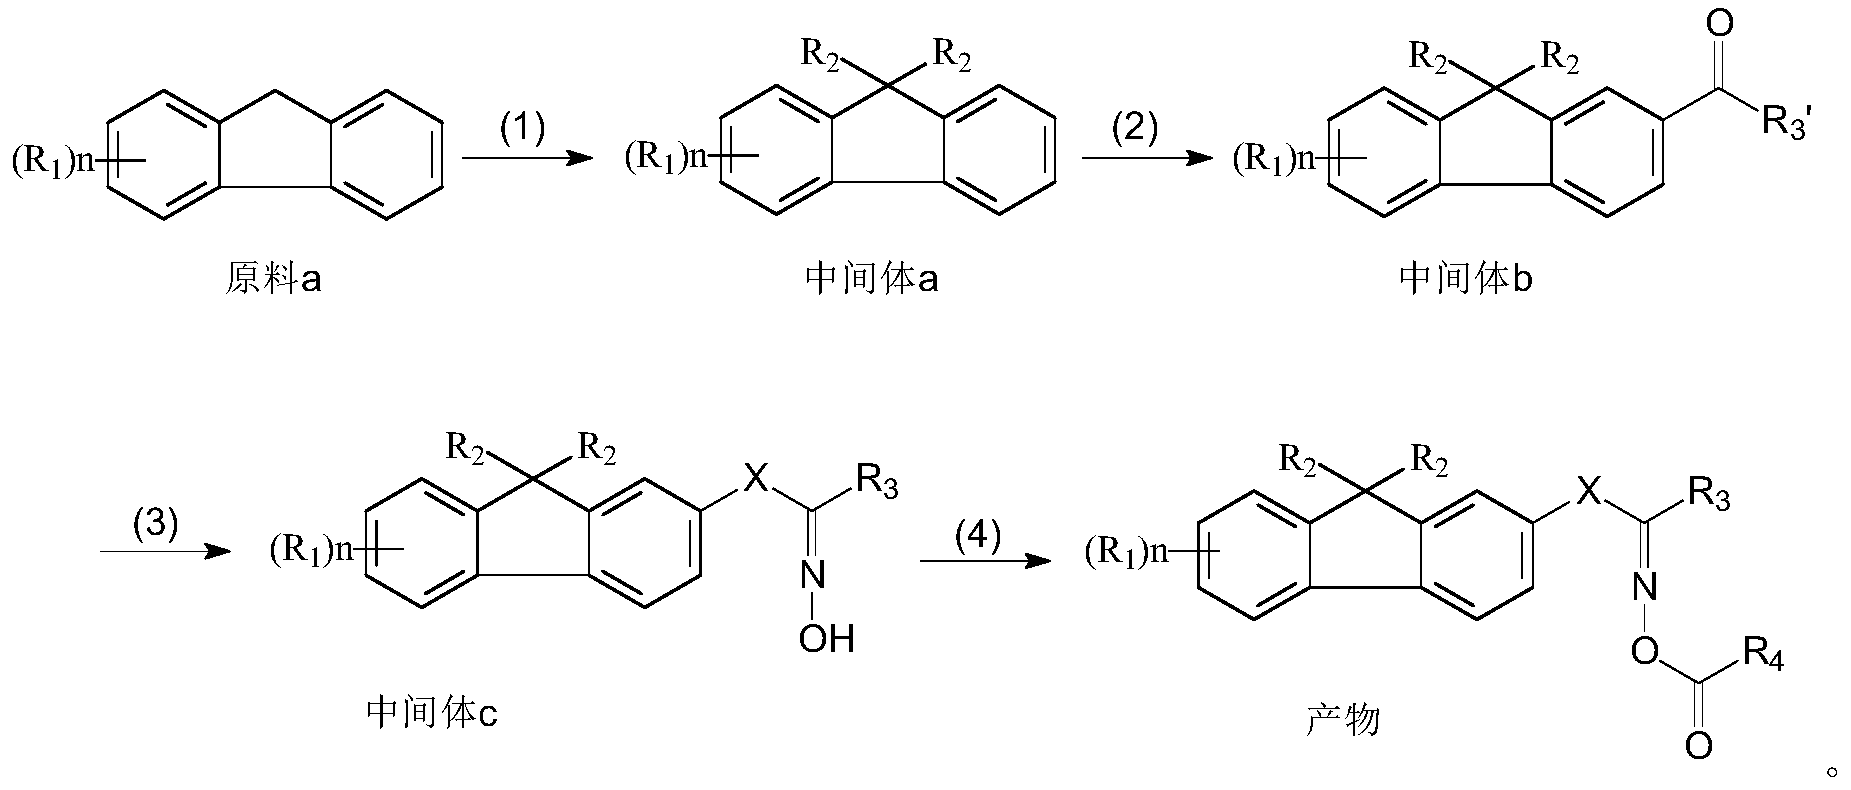 该合成过程依次包含亲核反应,傅克酰基化反应,肟化反应和酯化反应